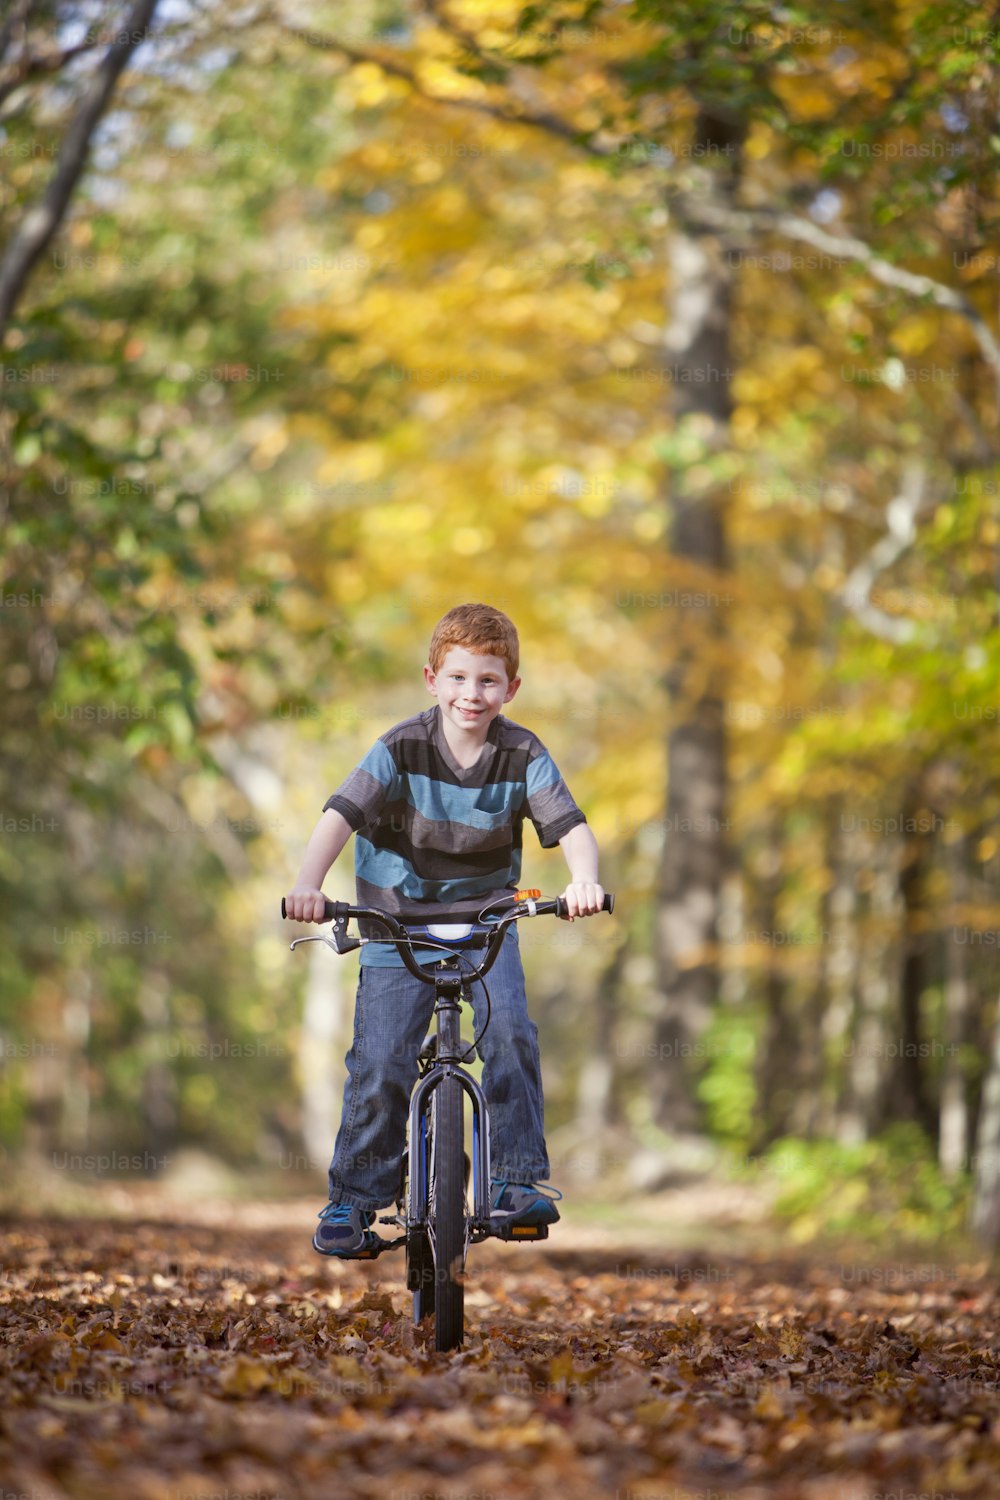 Giovane ragazzo con bici sul percorso durante l'autunno